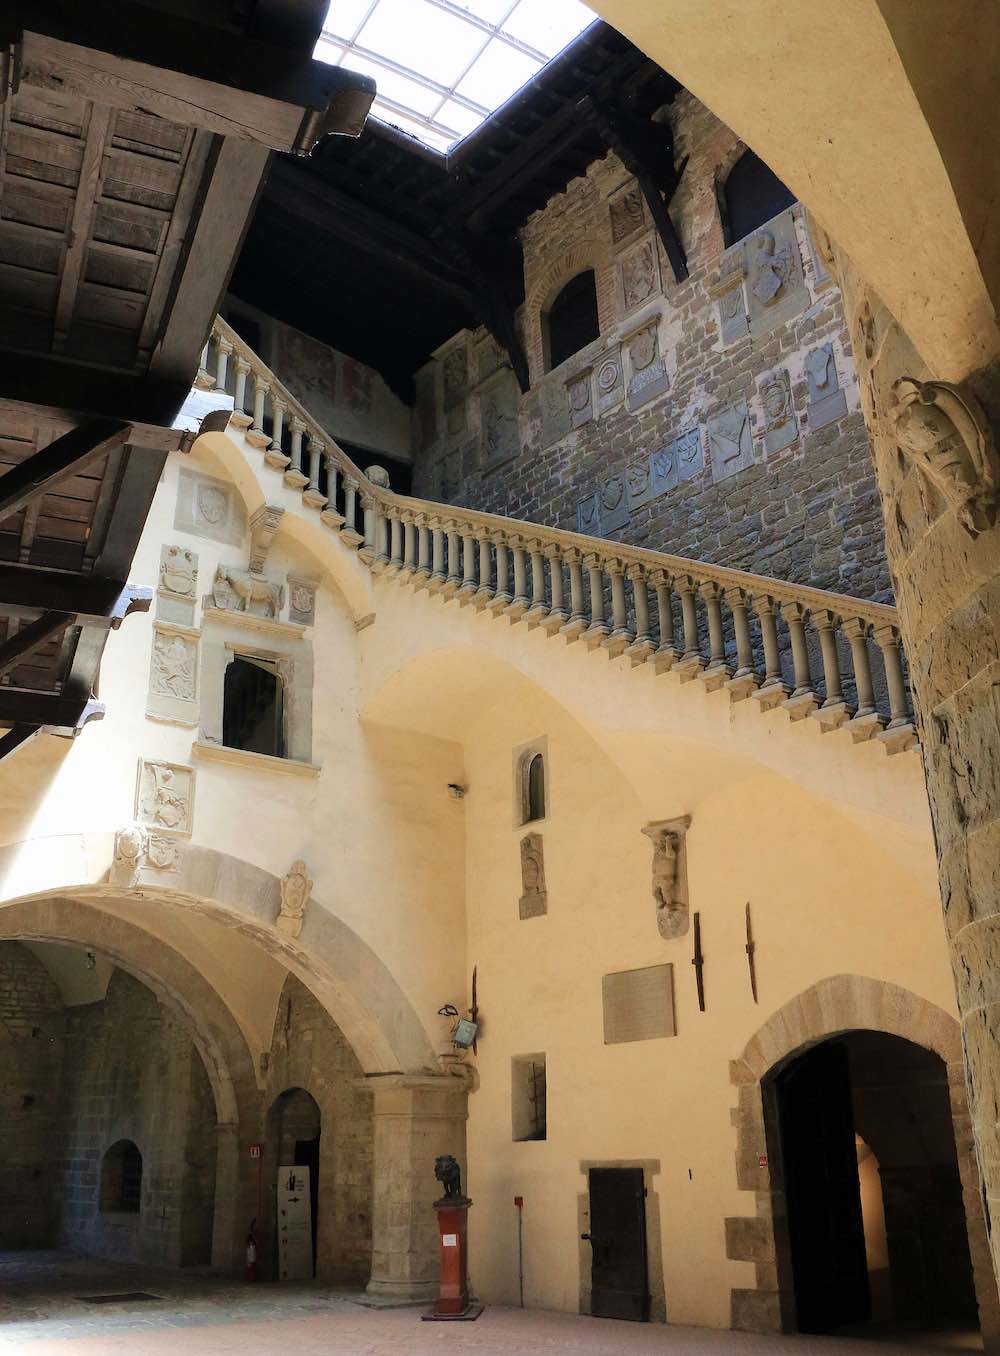 La corte interna del Castello dei conti Guidi a Poppi in Casentino, Toscana